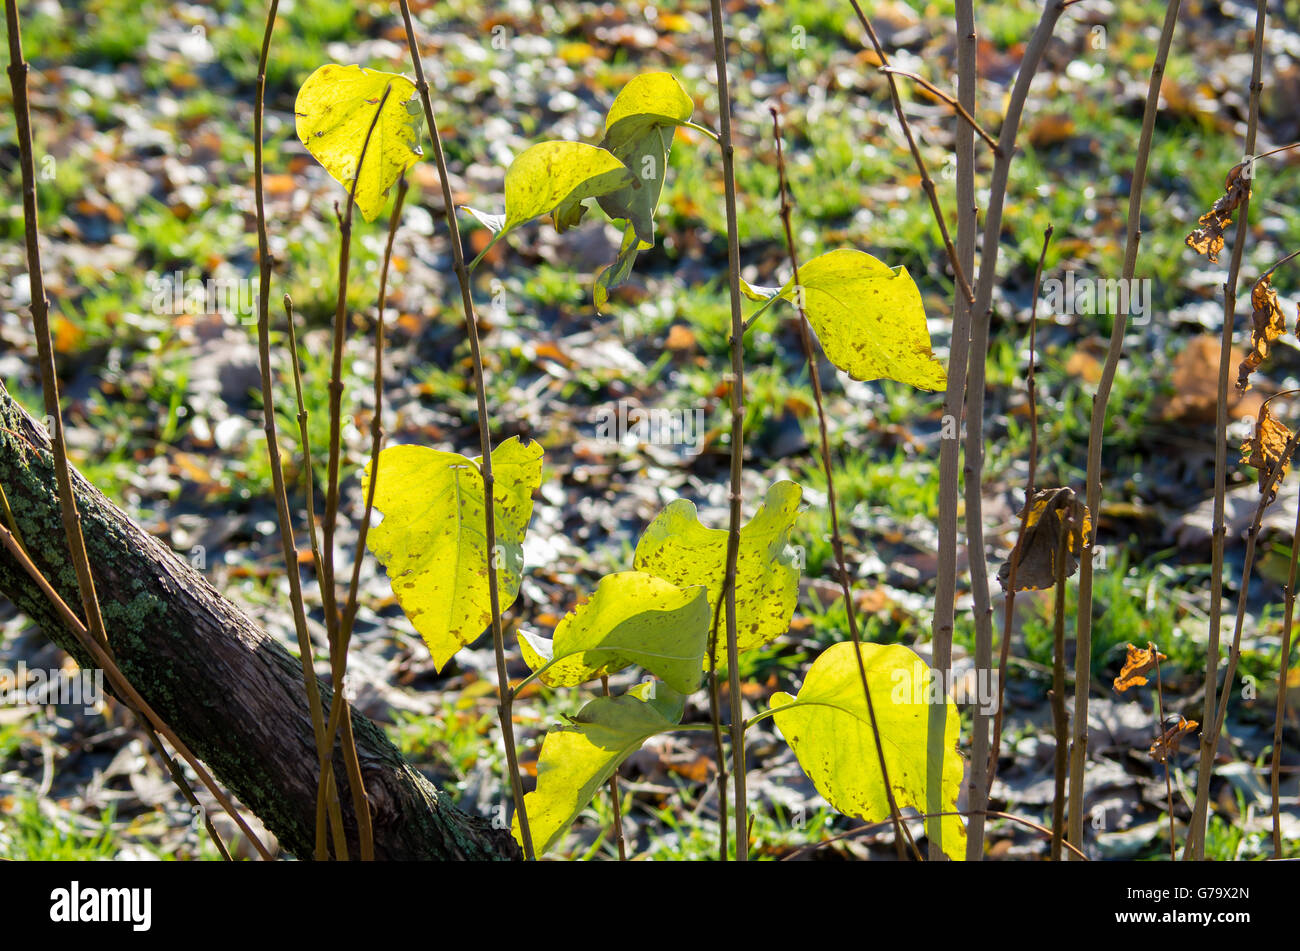 Certains automne feuilles vertes sur les jeunes pousses d'arbustes dans un parc de près. Banque D'Images